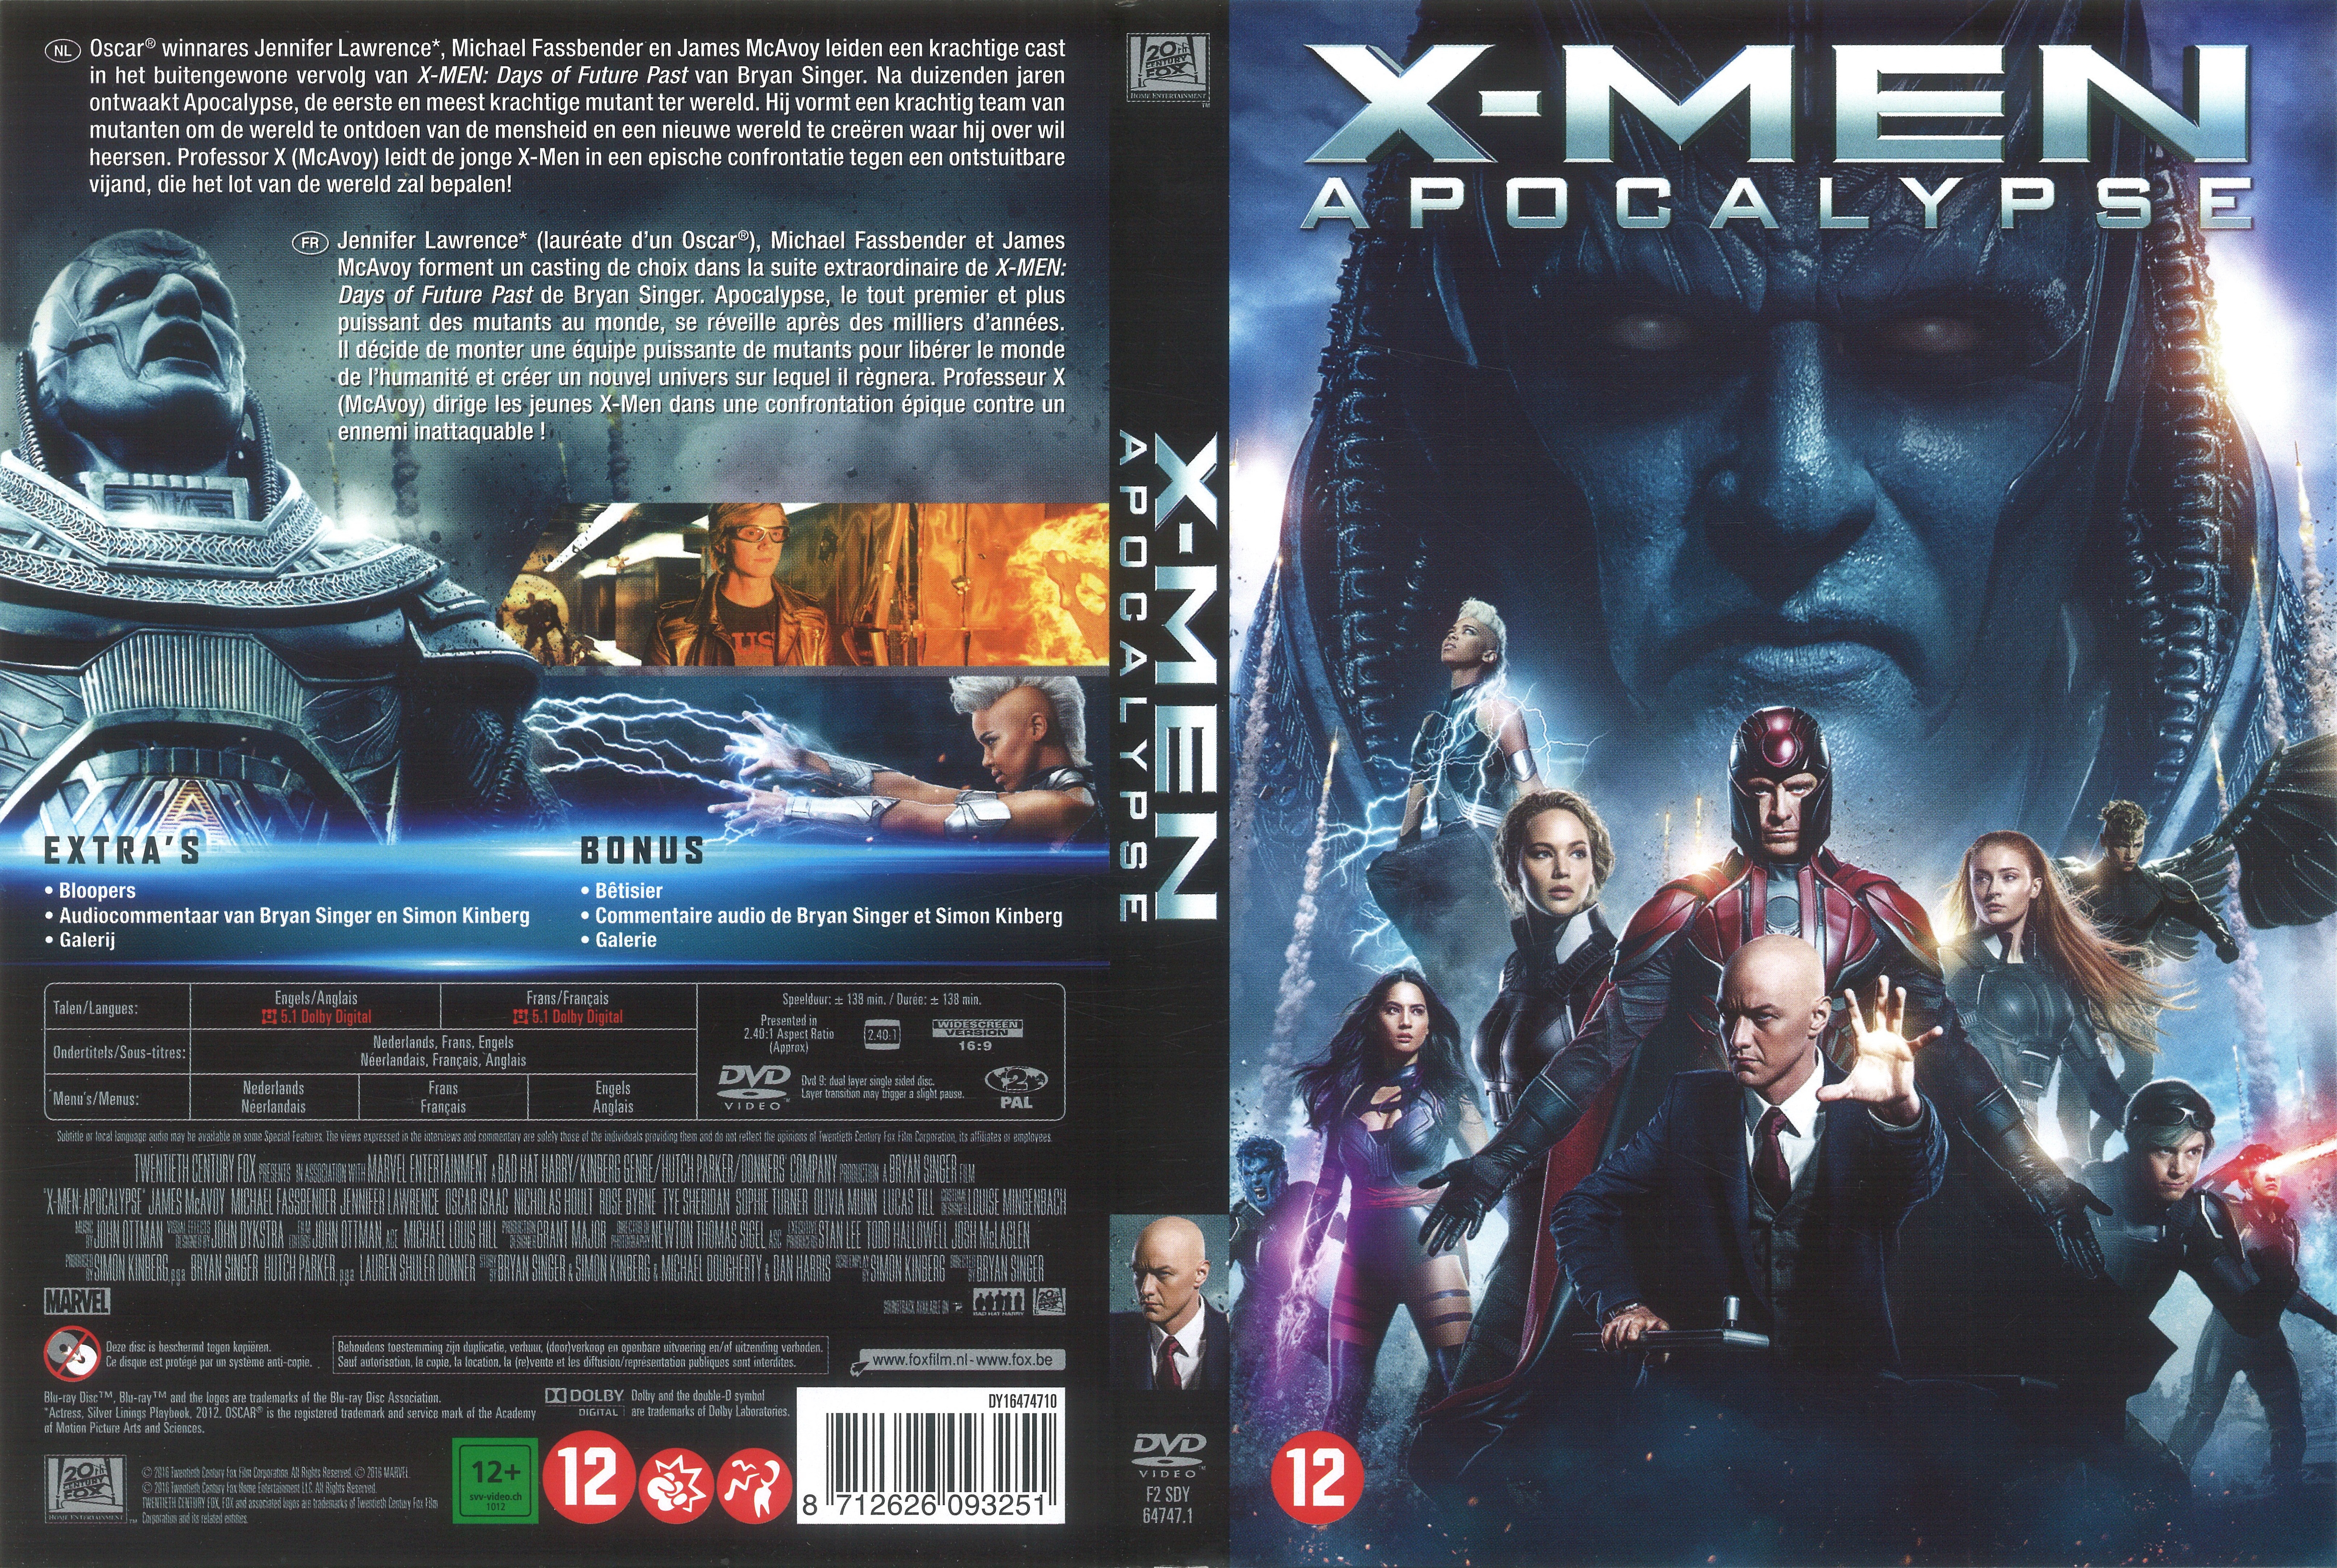 Jaquette DVD X-men apocalypse v2